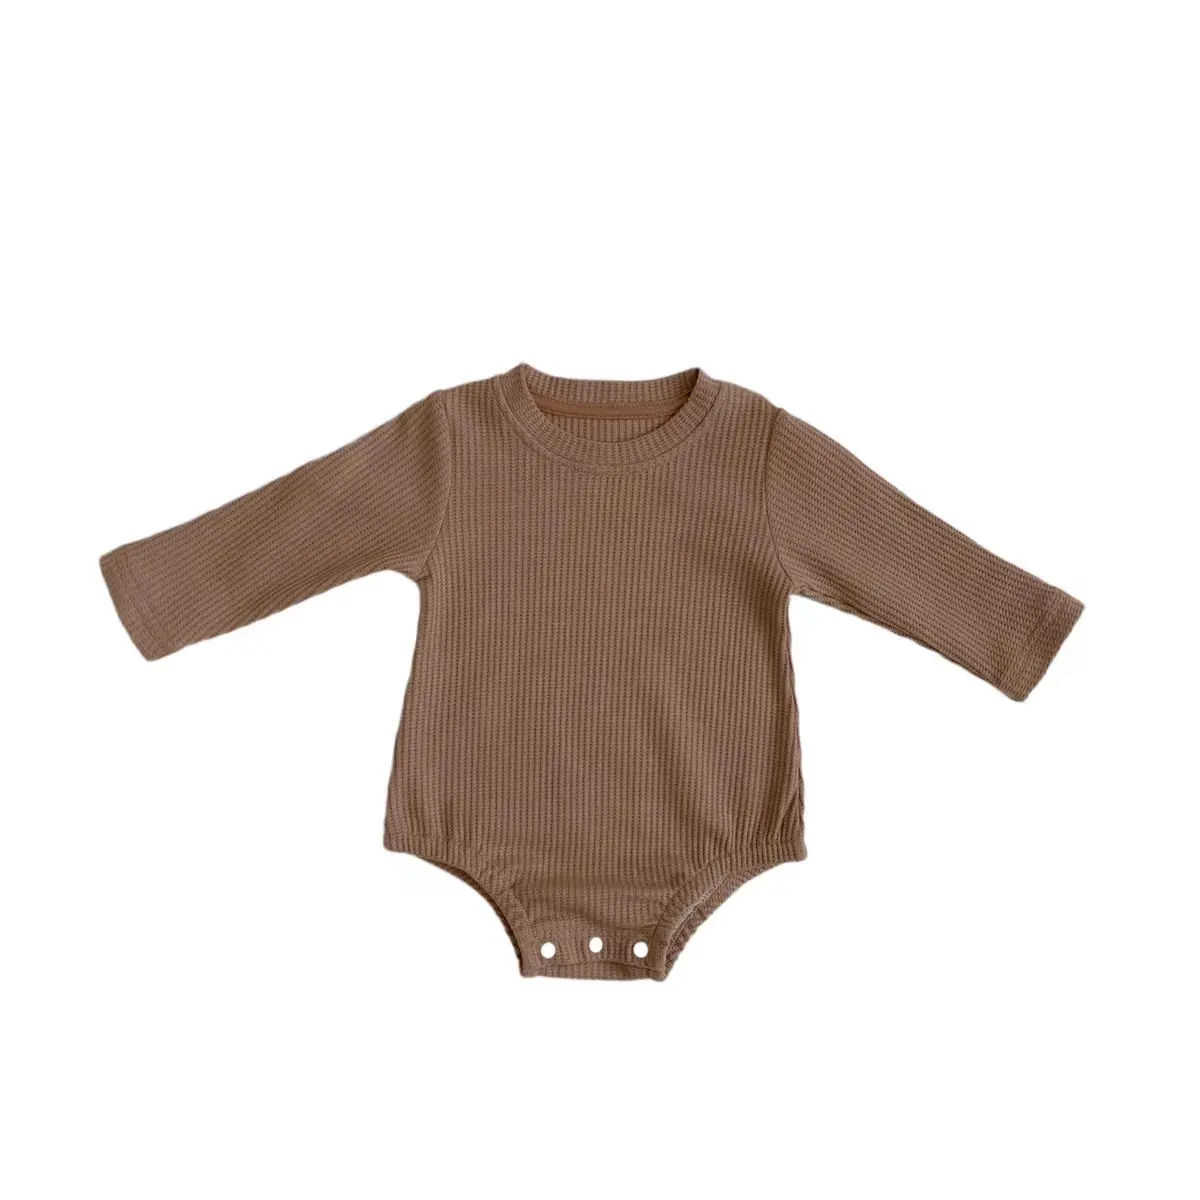 Pagliaccetto neonato vestiti pagliaccetto in cotone organico tuta abbigliamento bambino abbigliamento bambino